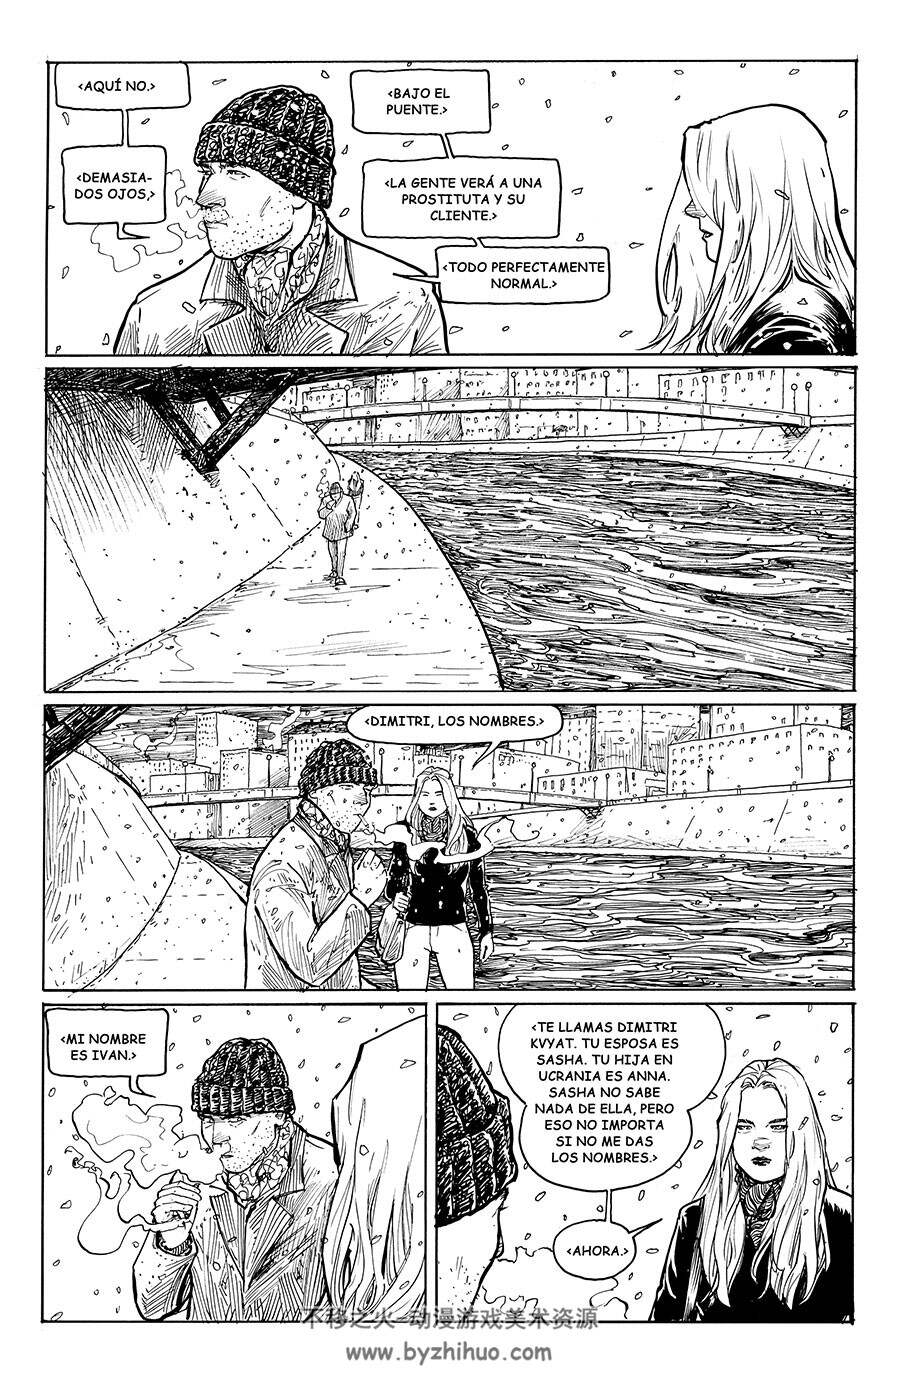 Cinco Años 1-2册 TERRY MOORE 西班牙语黑白奇幻漫画